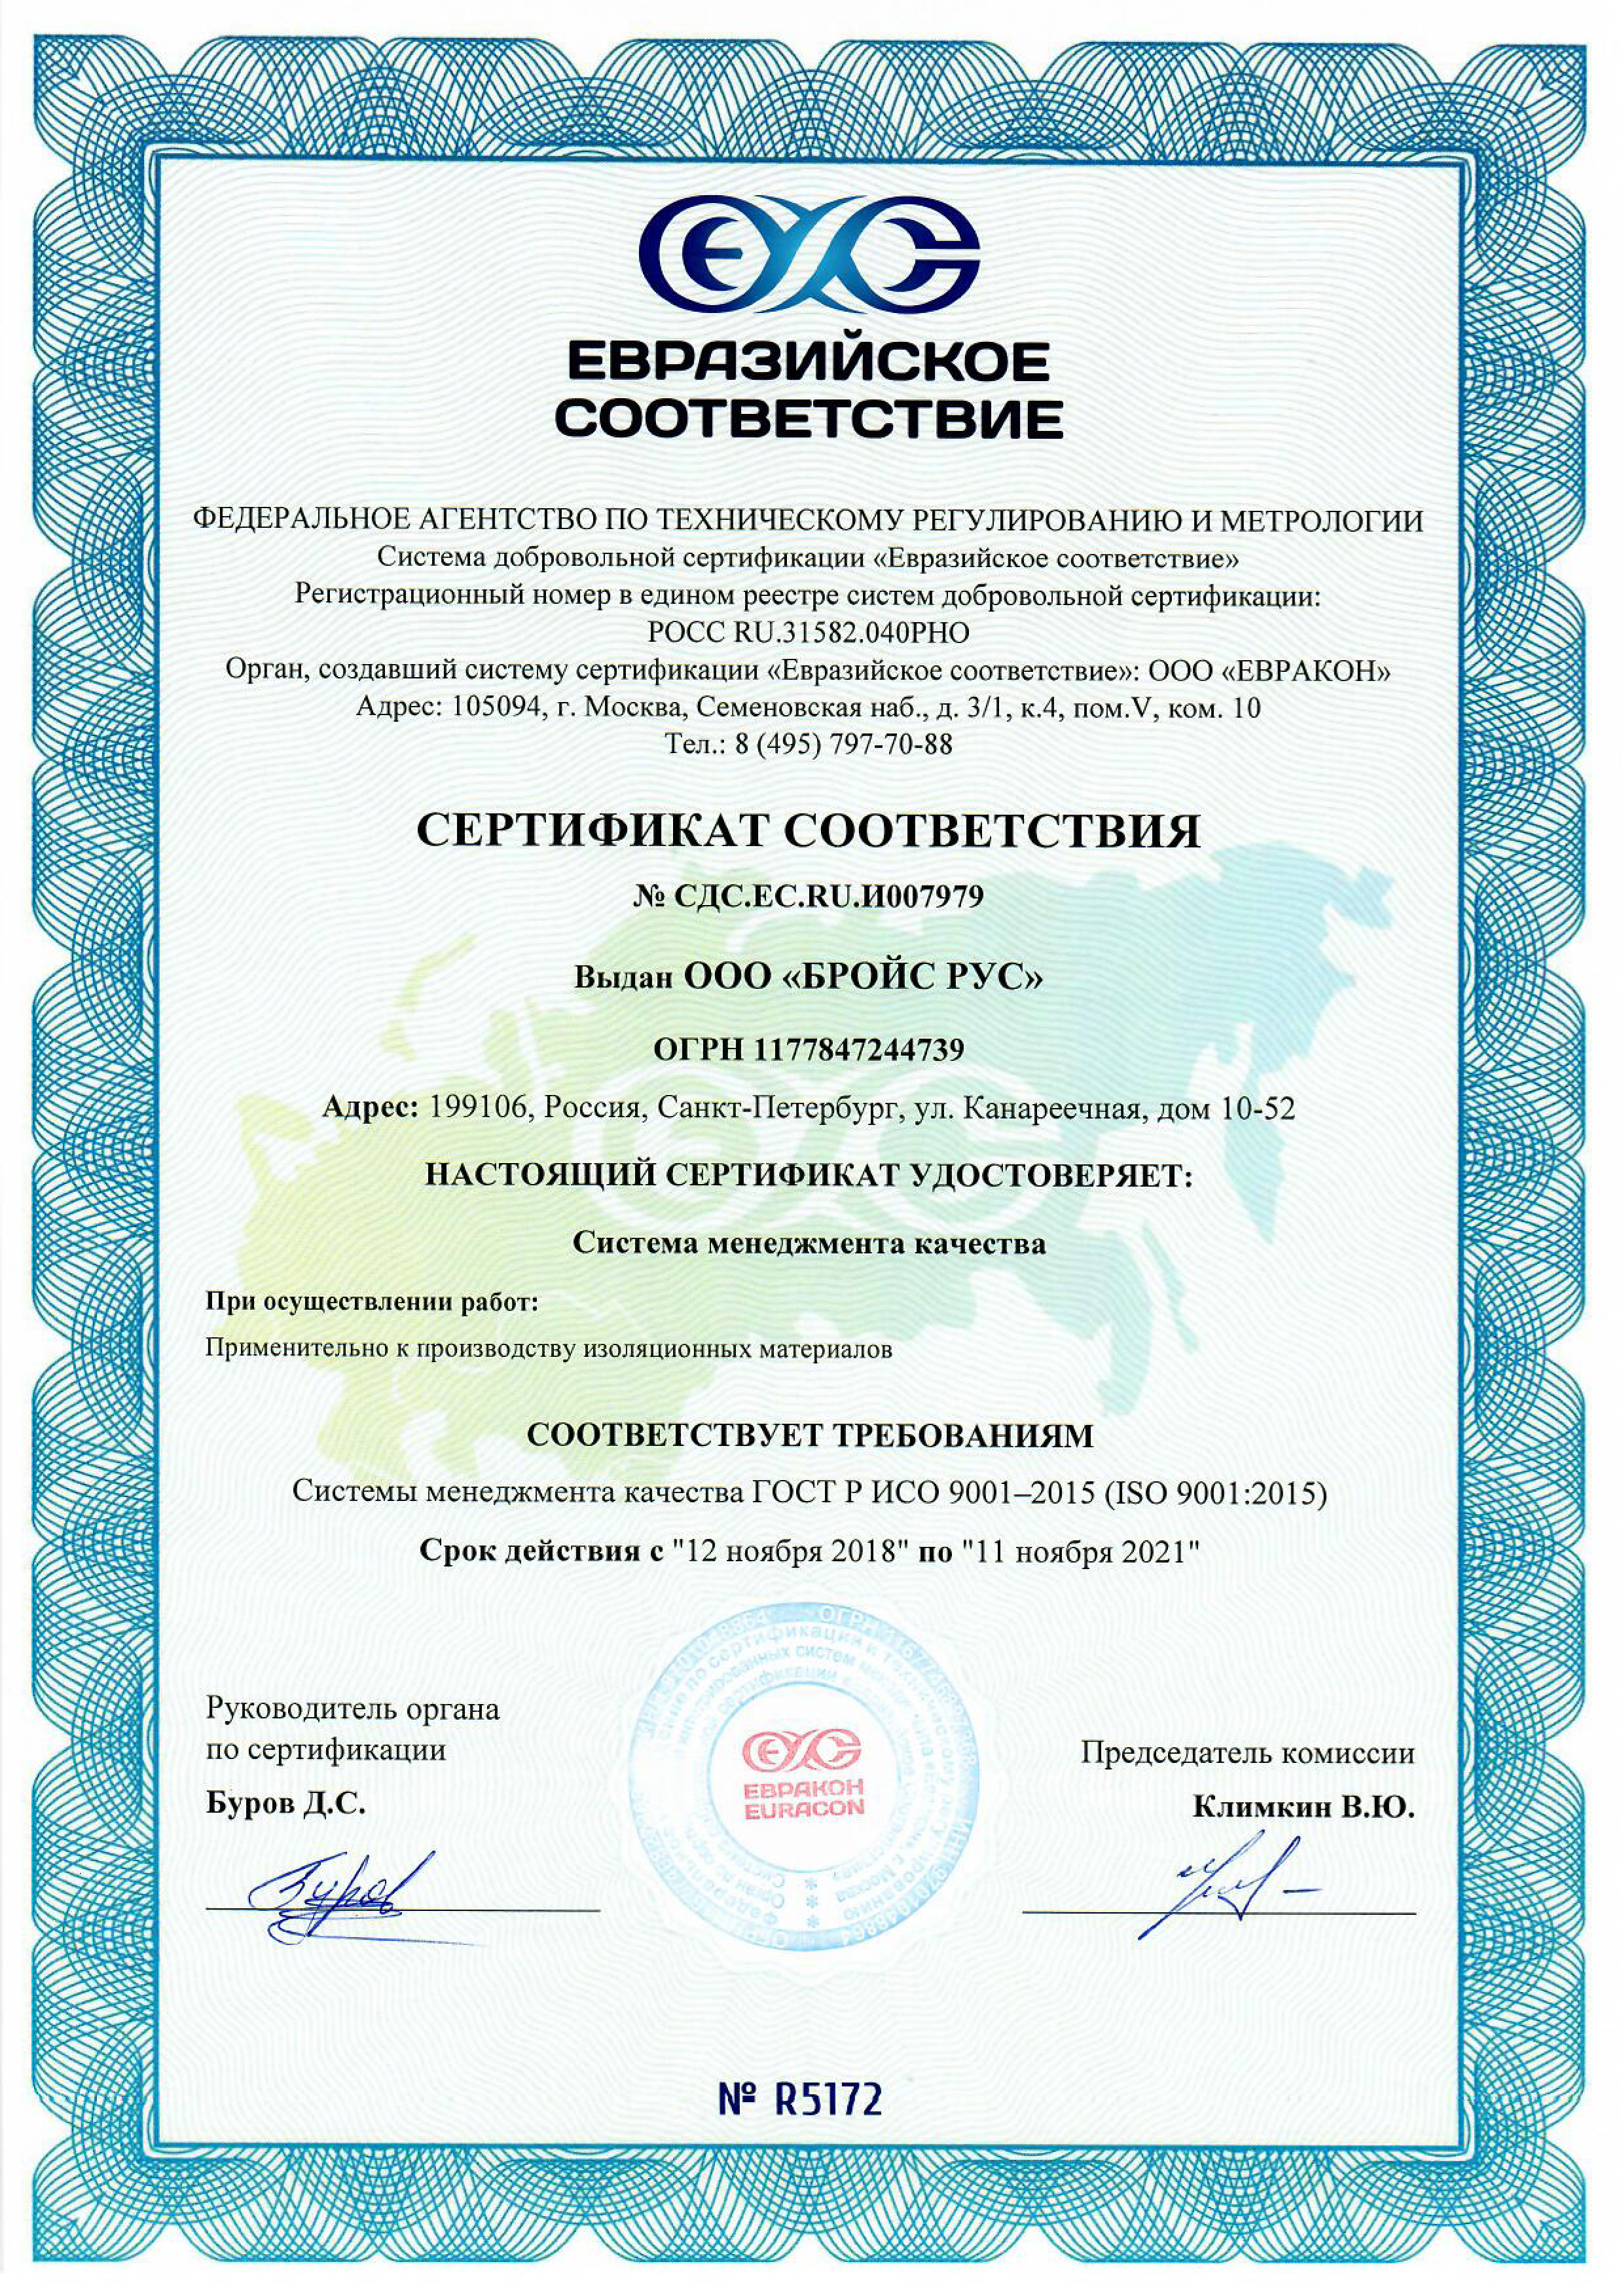 Сертификат евразийского соответствия